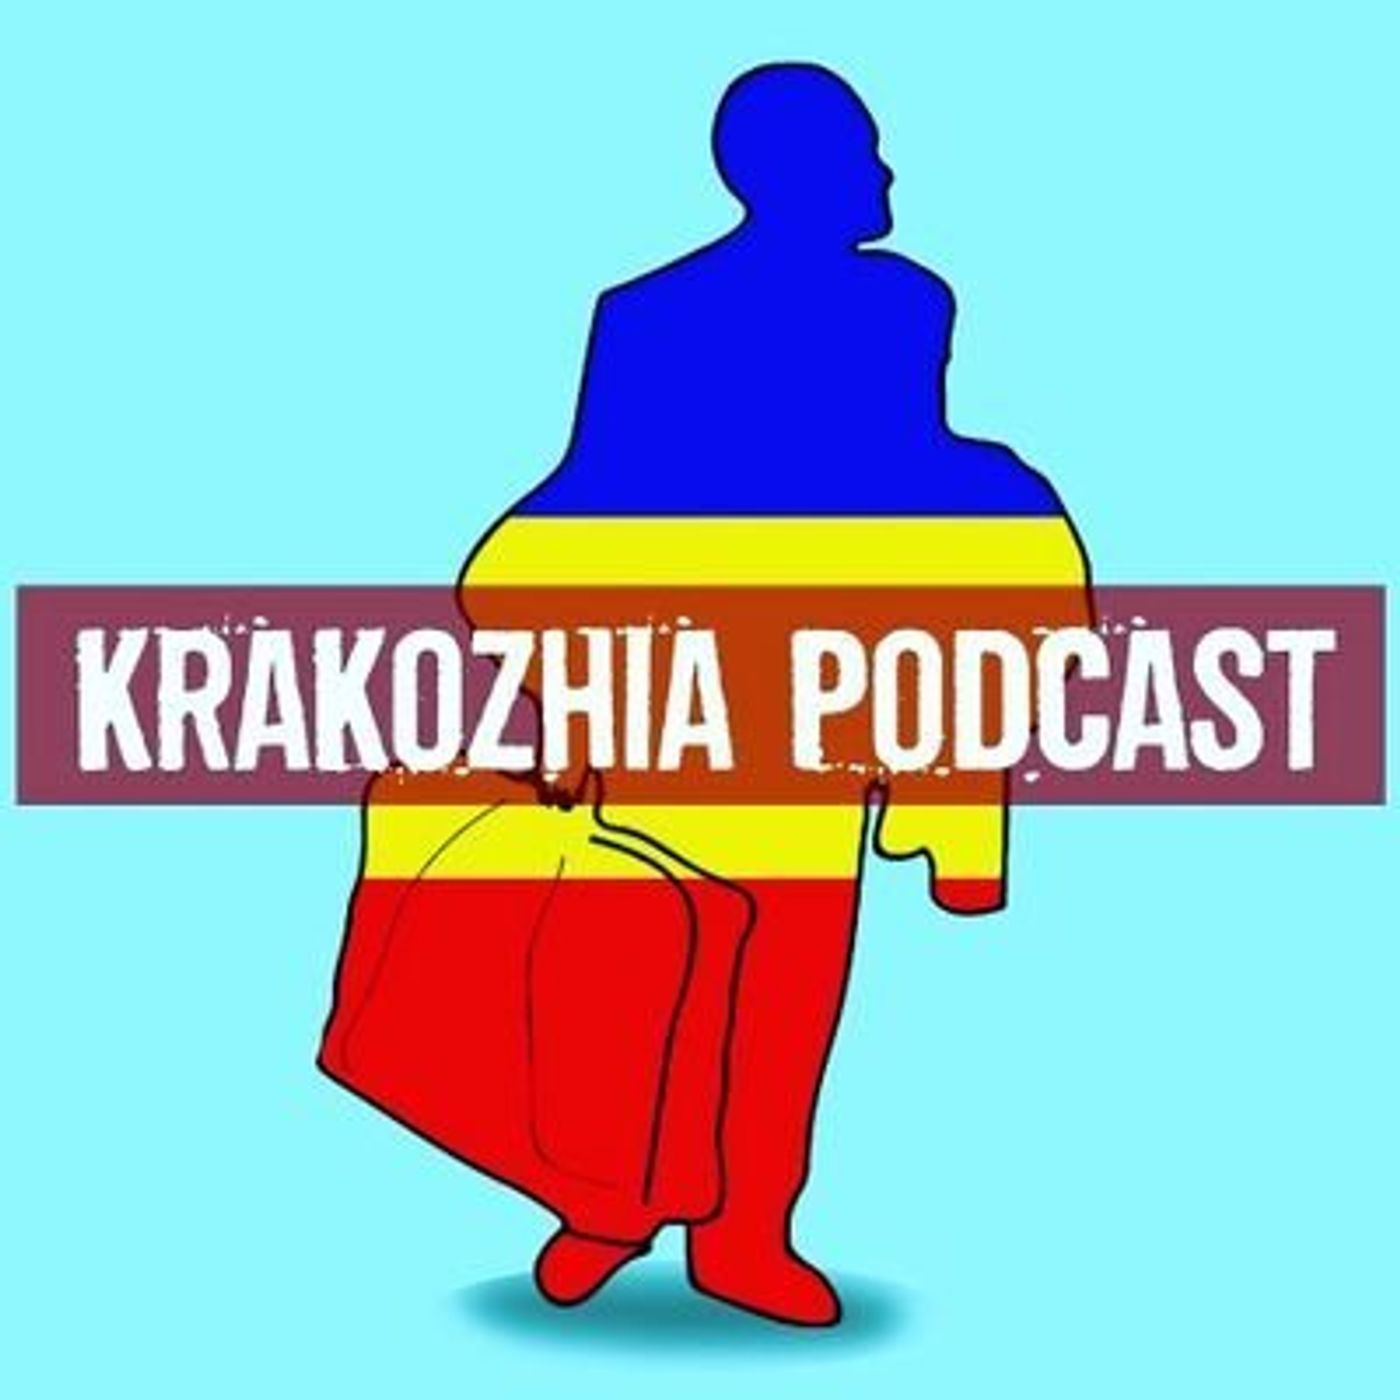 Krakozhia Podcast:Krakozhia Podcast